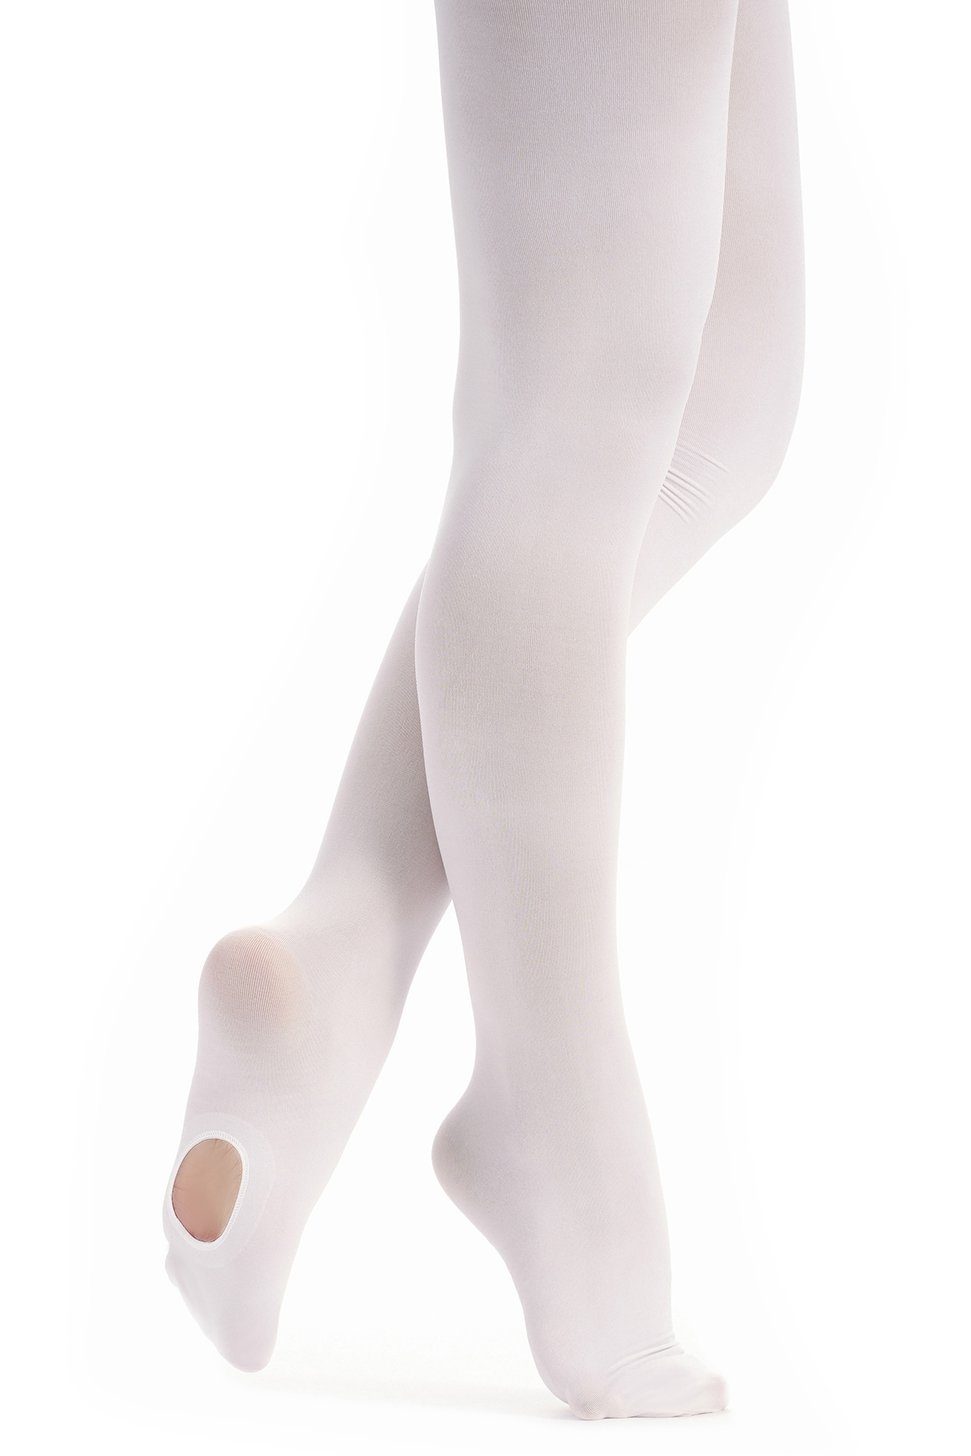 Ballenloch Strumpfhose mit für kein tanzmuster Mädchen Dana Rutschen, Strumpfhose äußerst weiß und wunderbar Ballett weich, strapazierfähig Kratzen